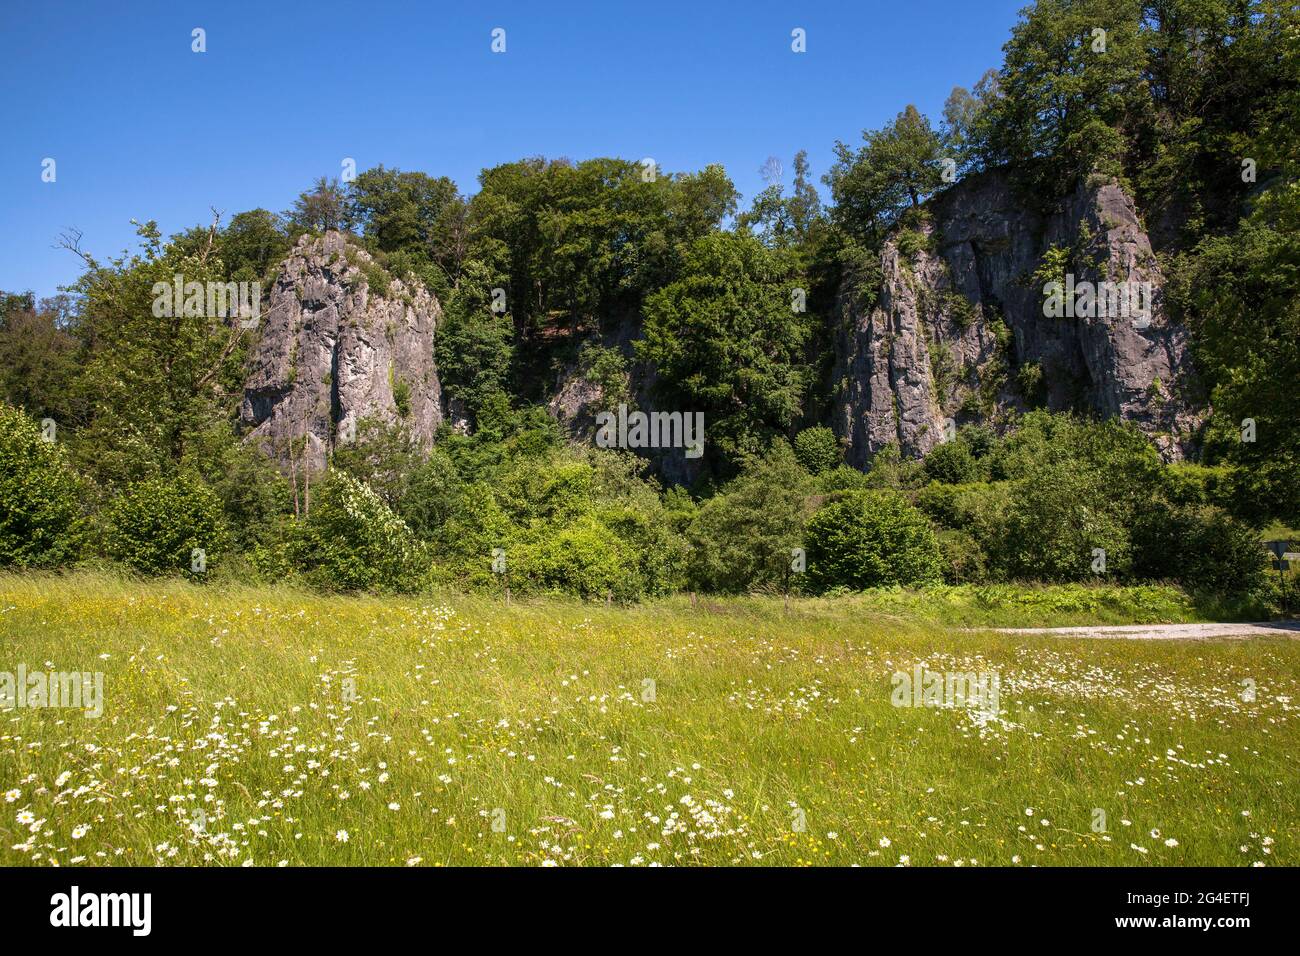 La formation rocheuse de sept Virgins (vue partielle) dans la vallée de Hoenne entre Hemer et Balve, région des pays aigre, Rhénanie-du-Nord-Westphalie, Allemagne Banque D'Images